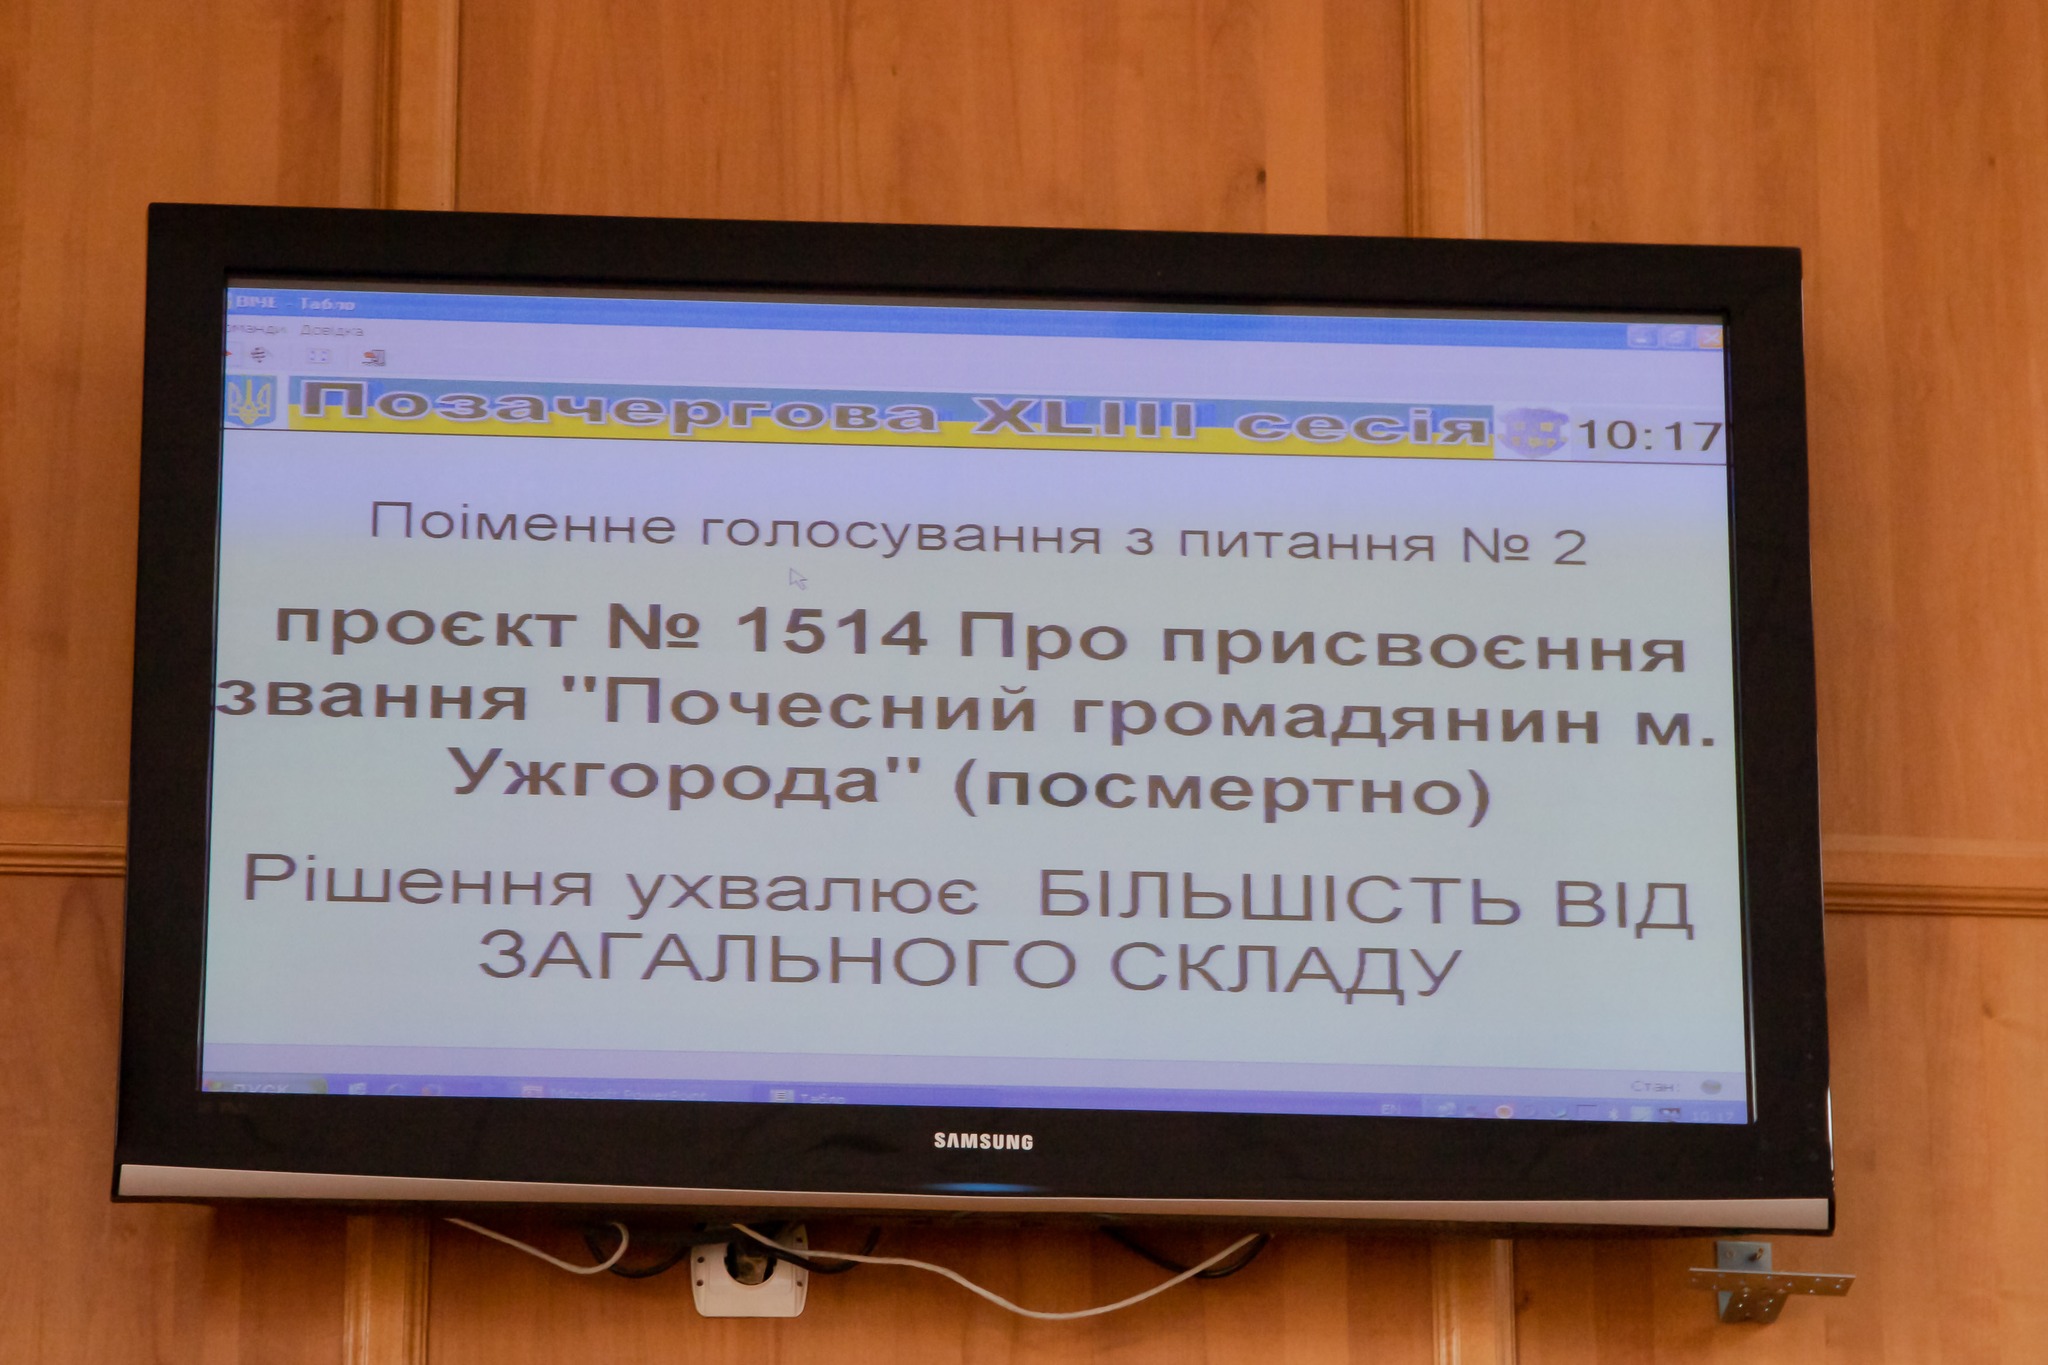 47 військовослужбовцям присвоєно звання "Почесний громадянин м. Ужгорода" (посмертно) 